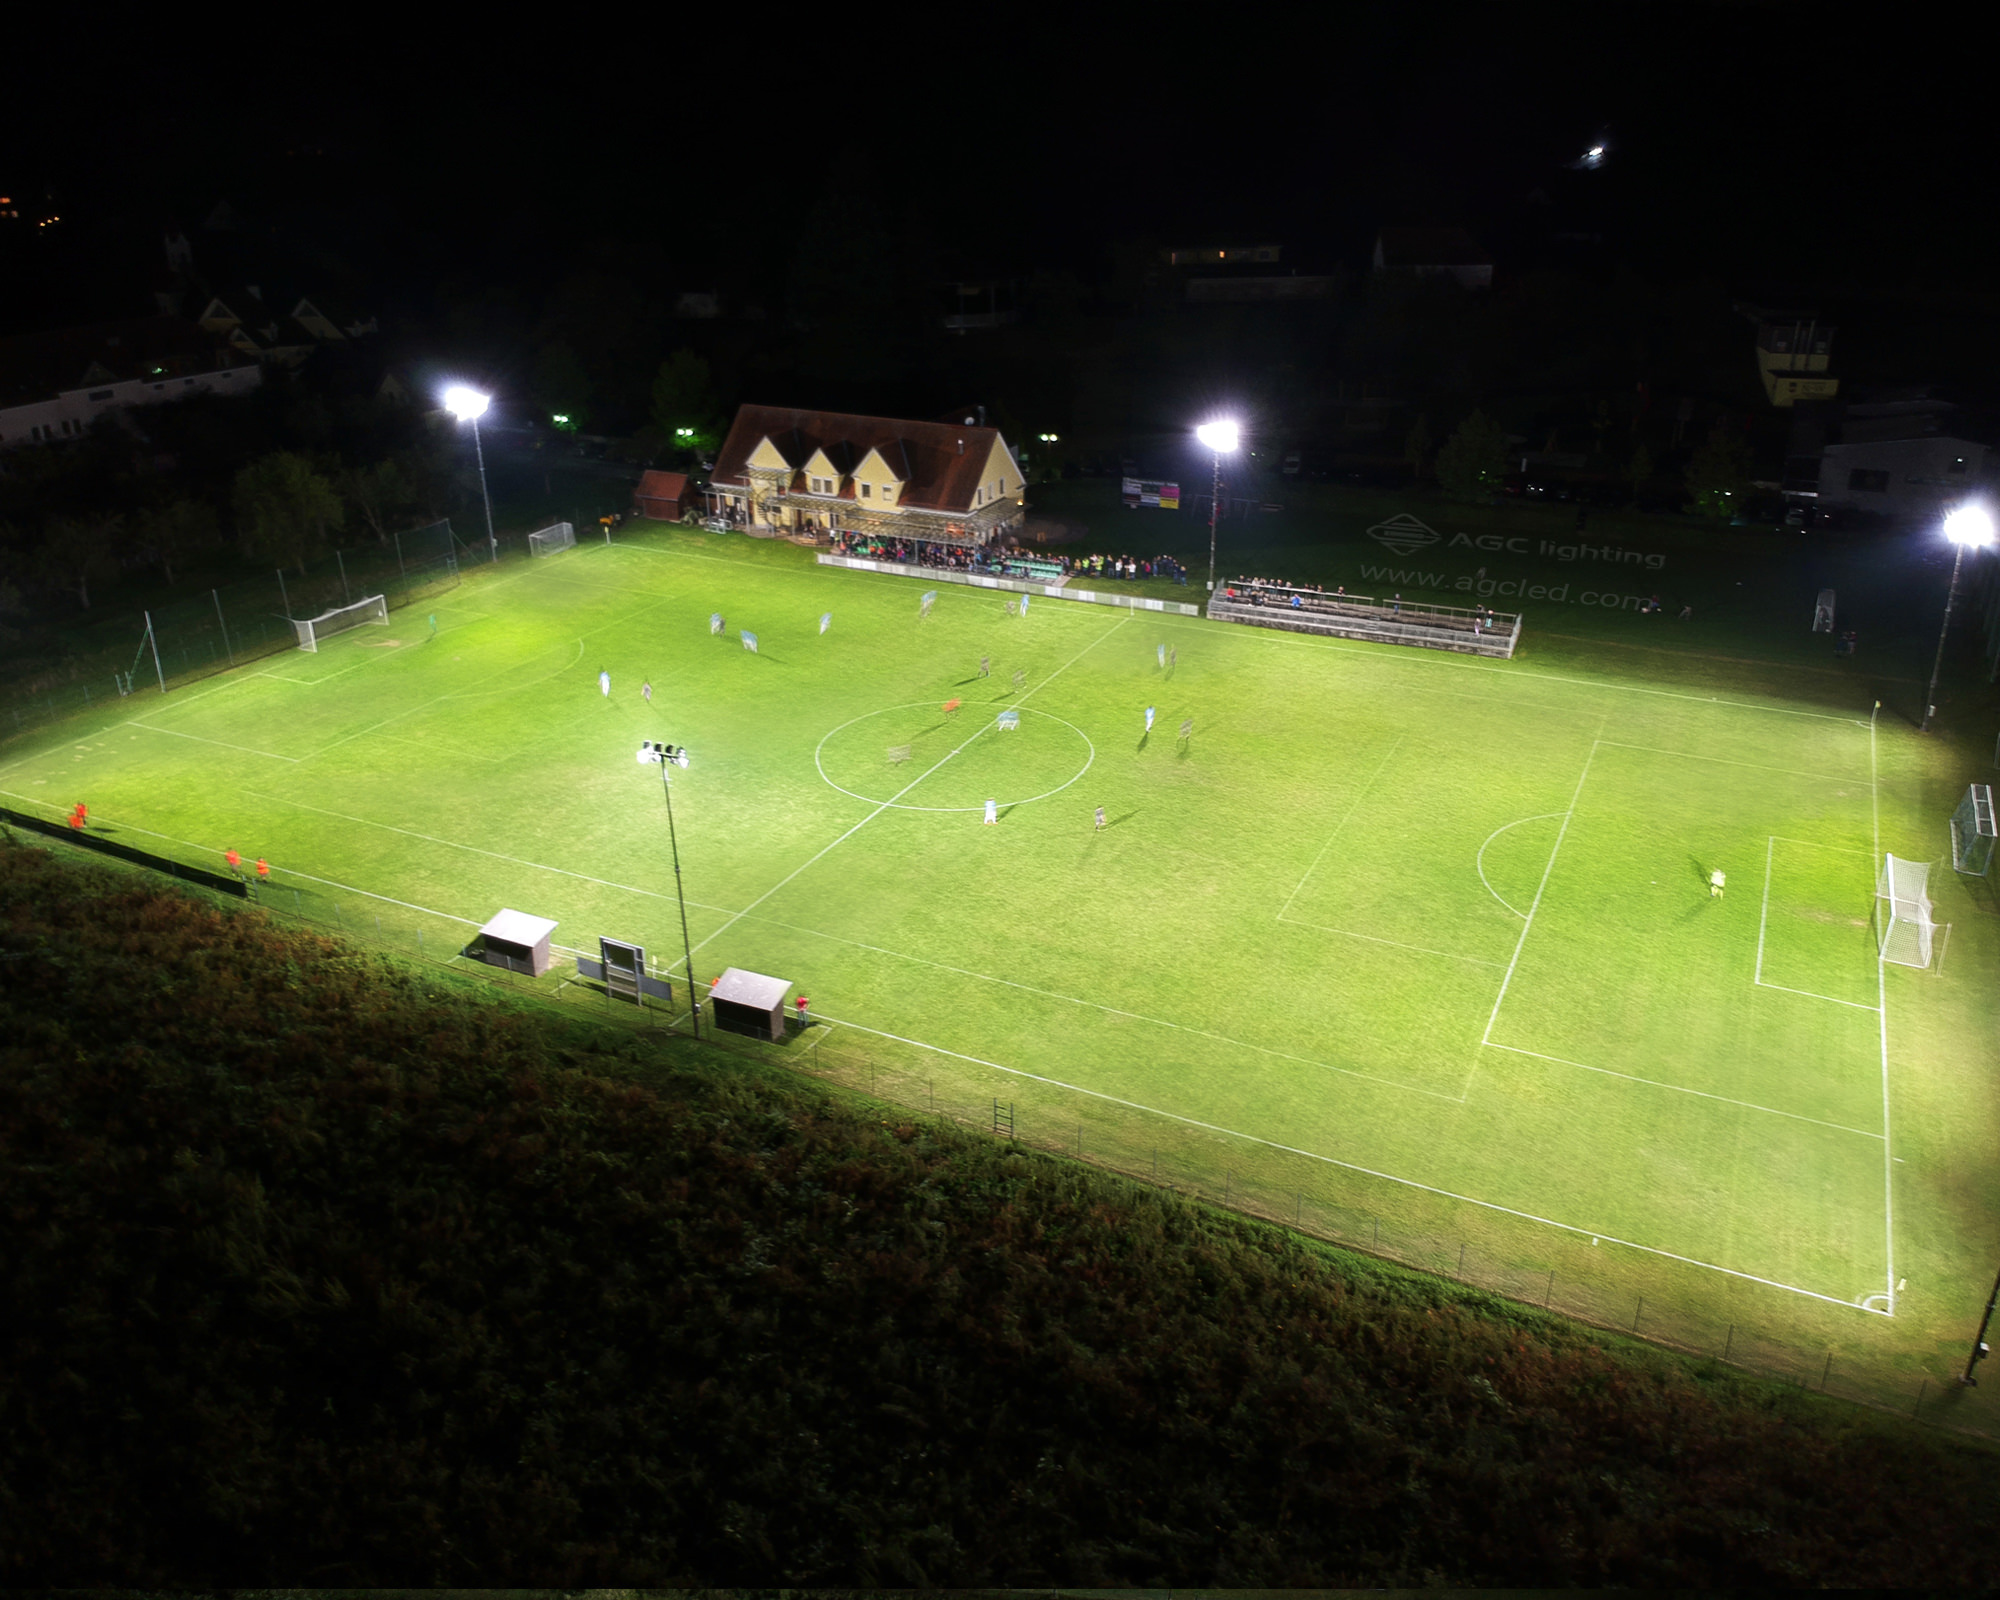 600W flood light in community soccer field